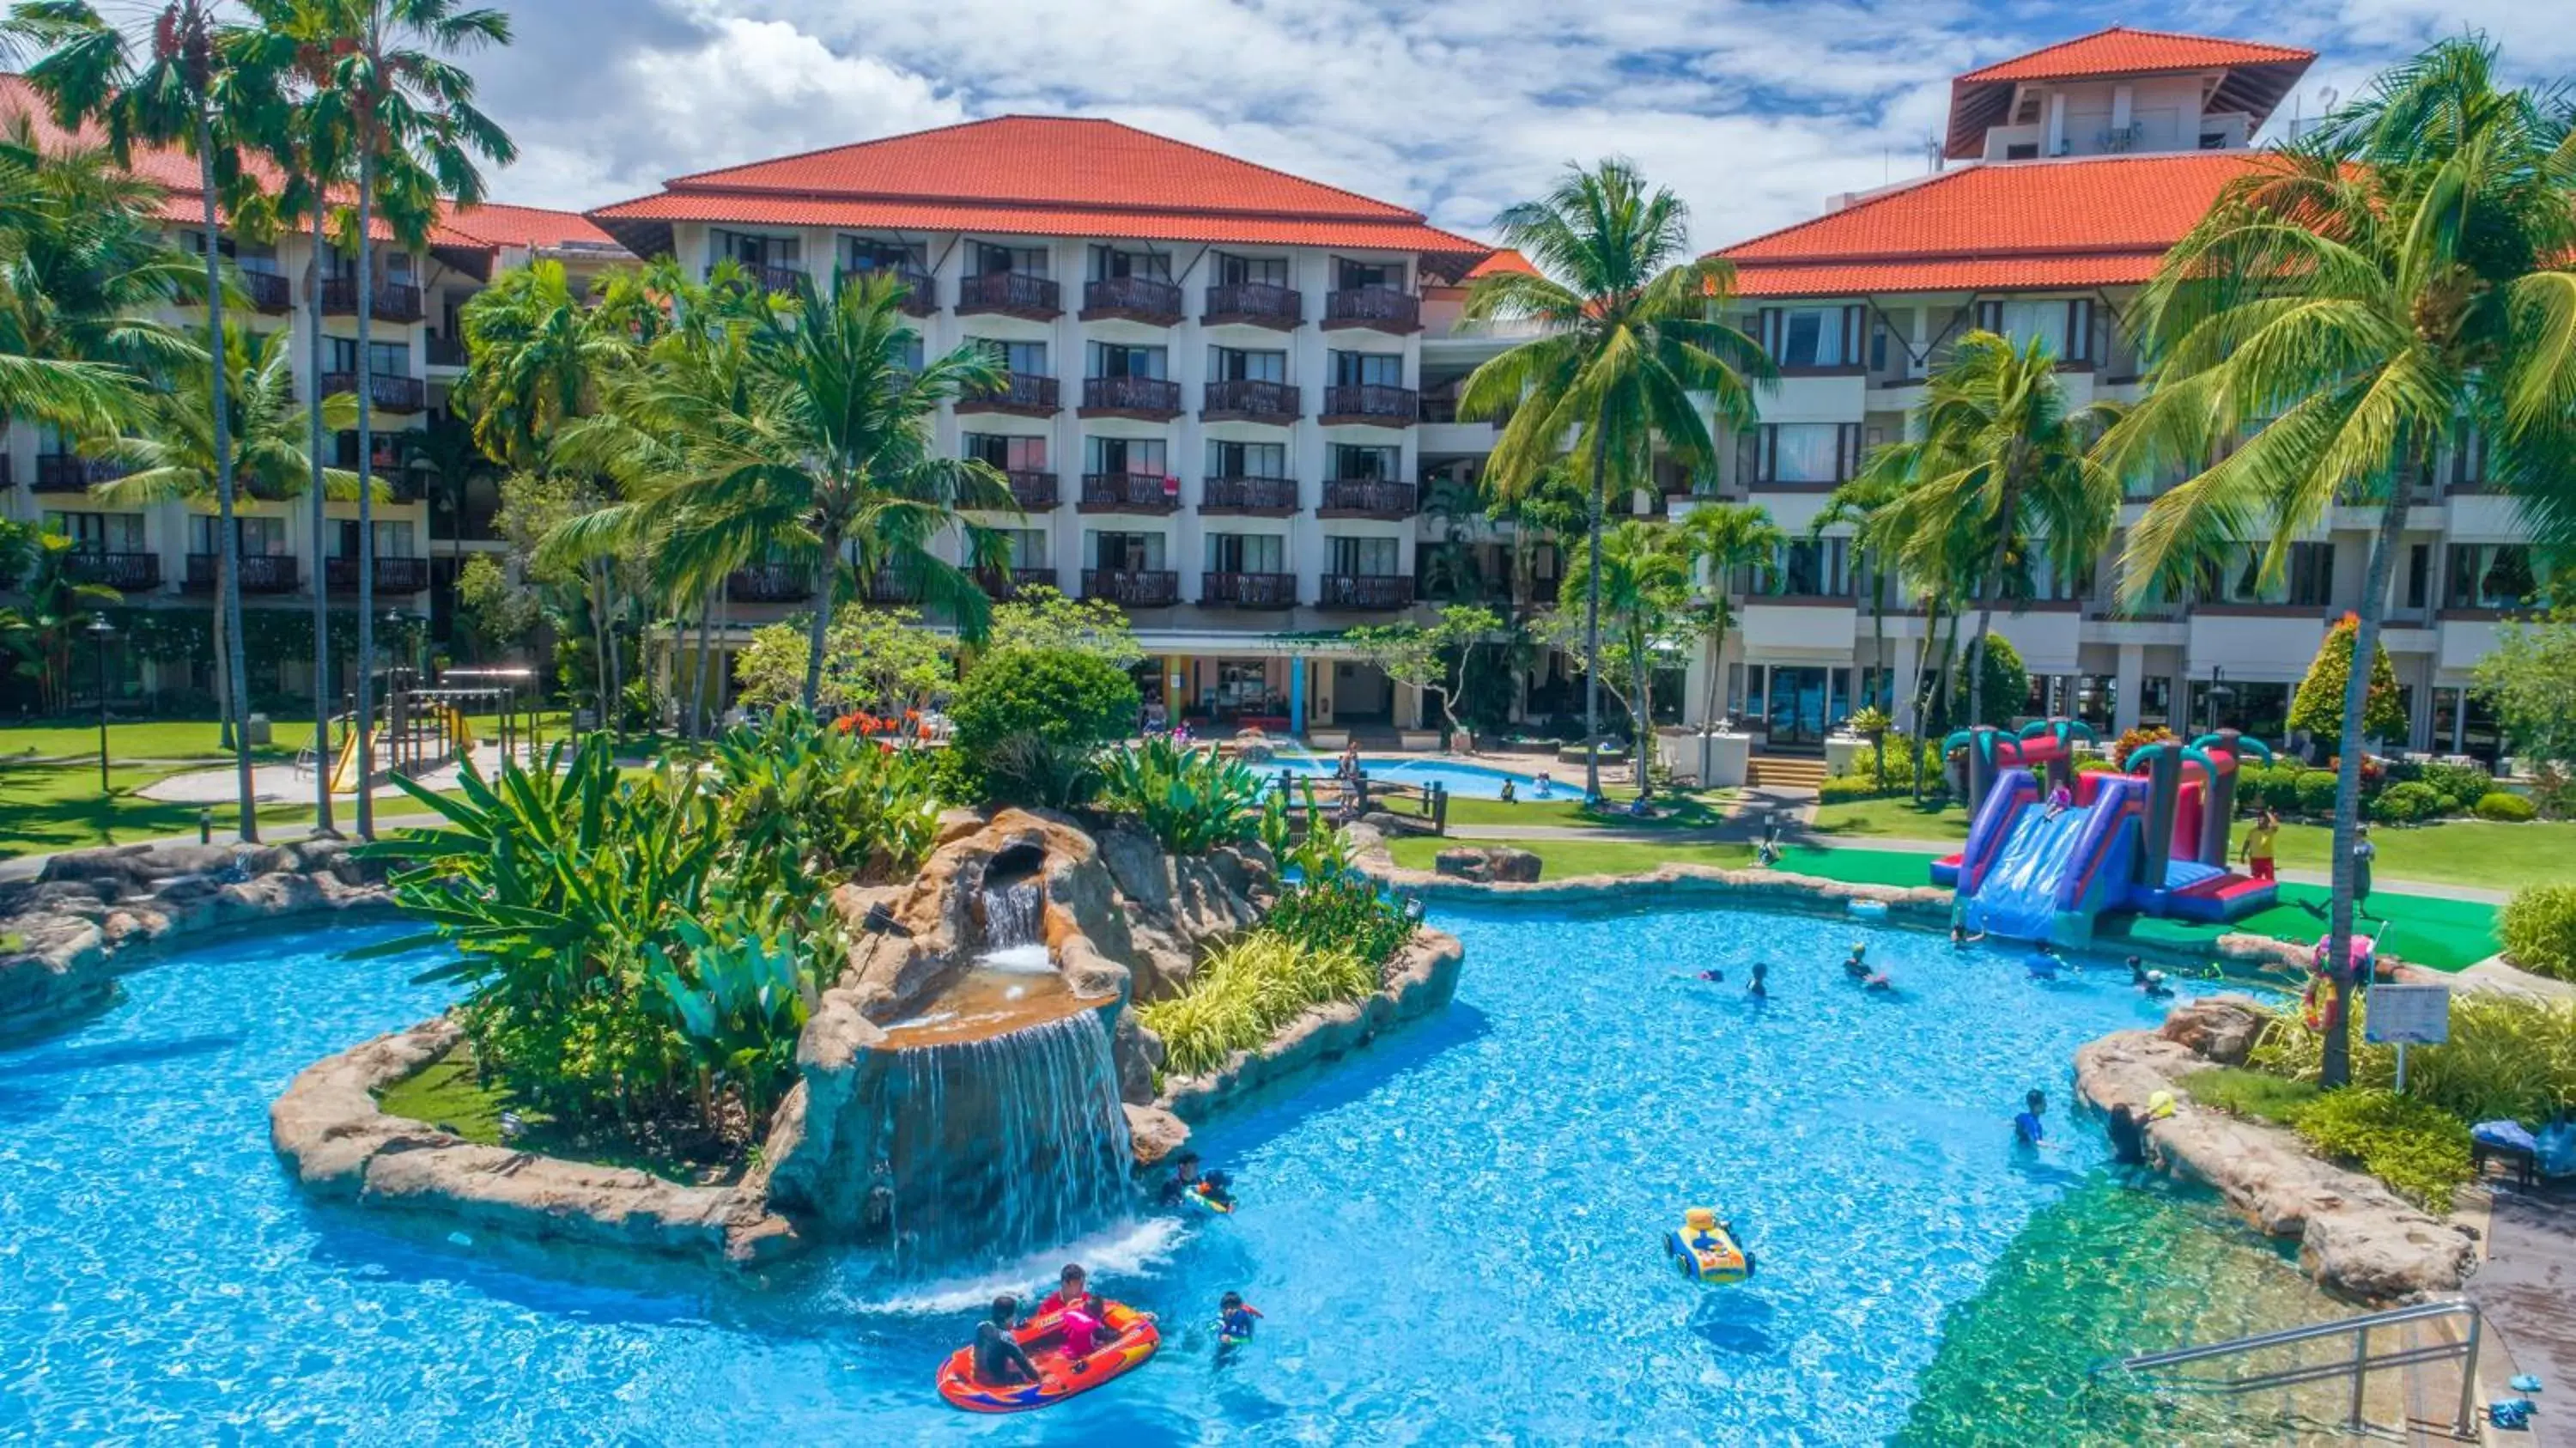 Pool View in The Magellan Sutera Resort